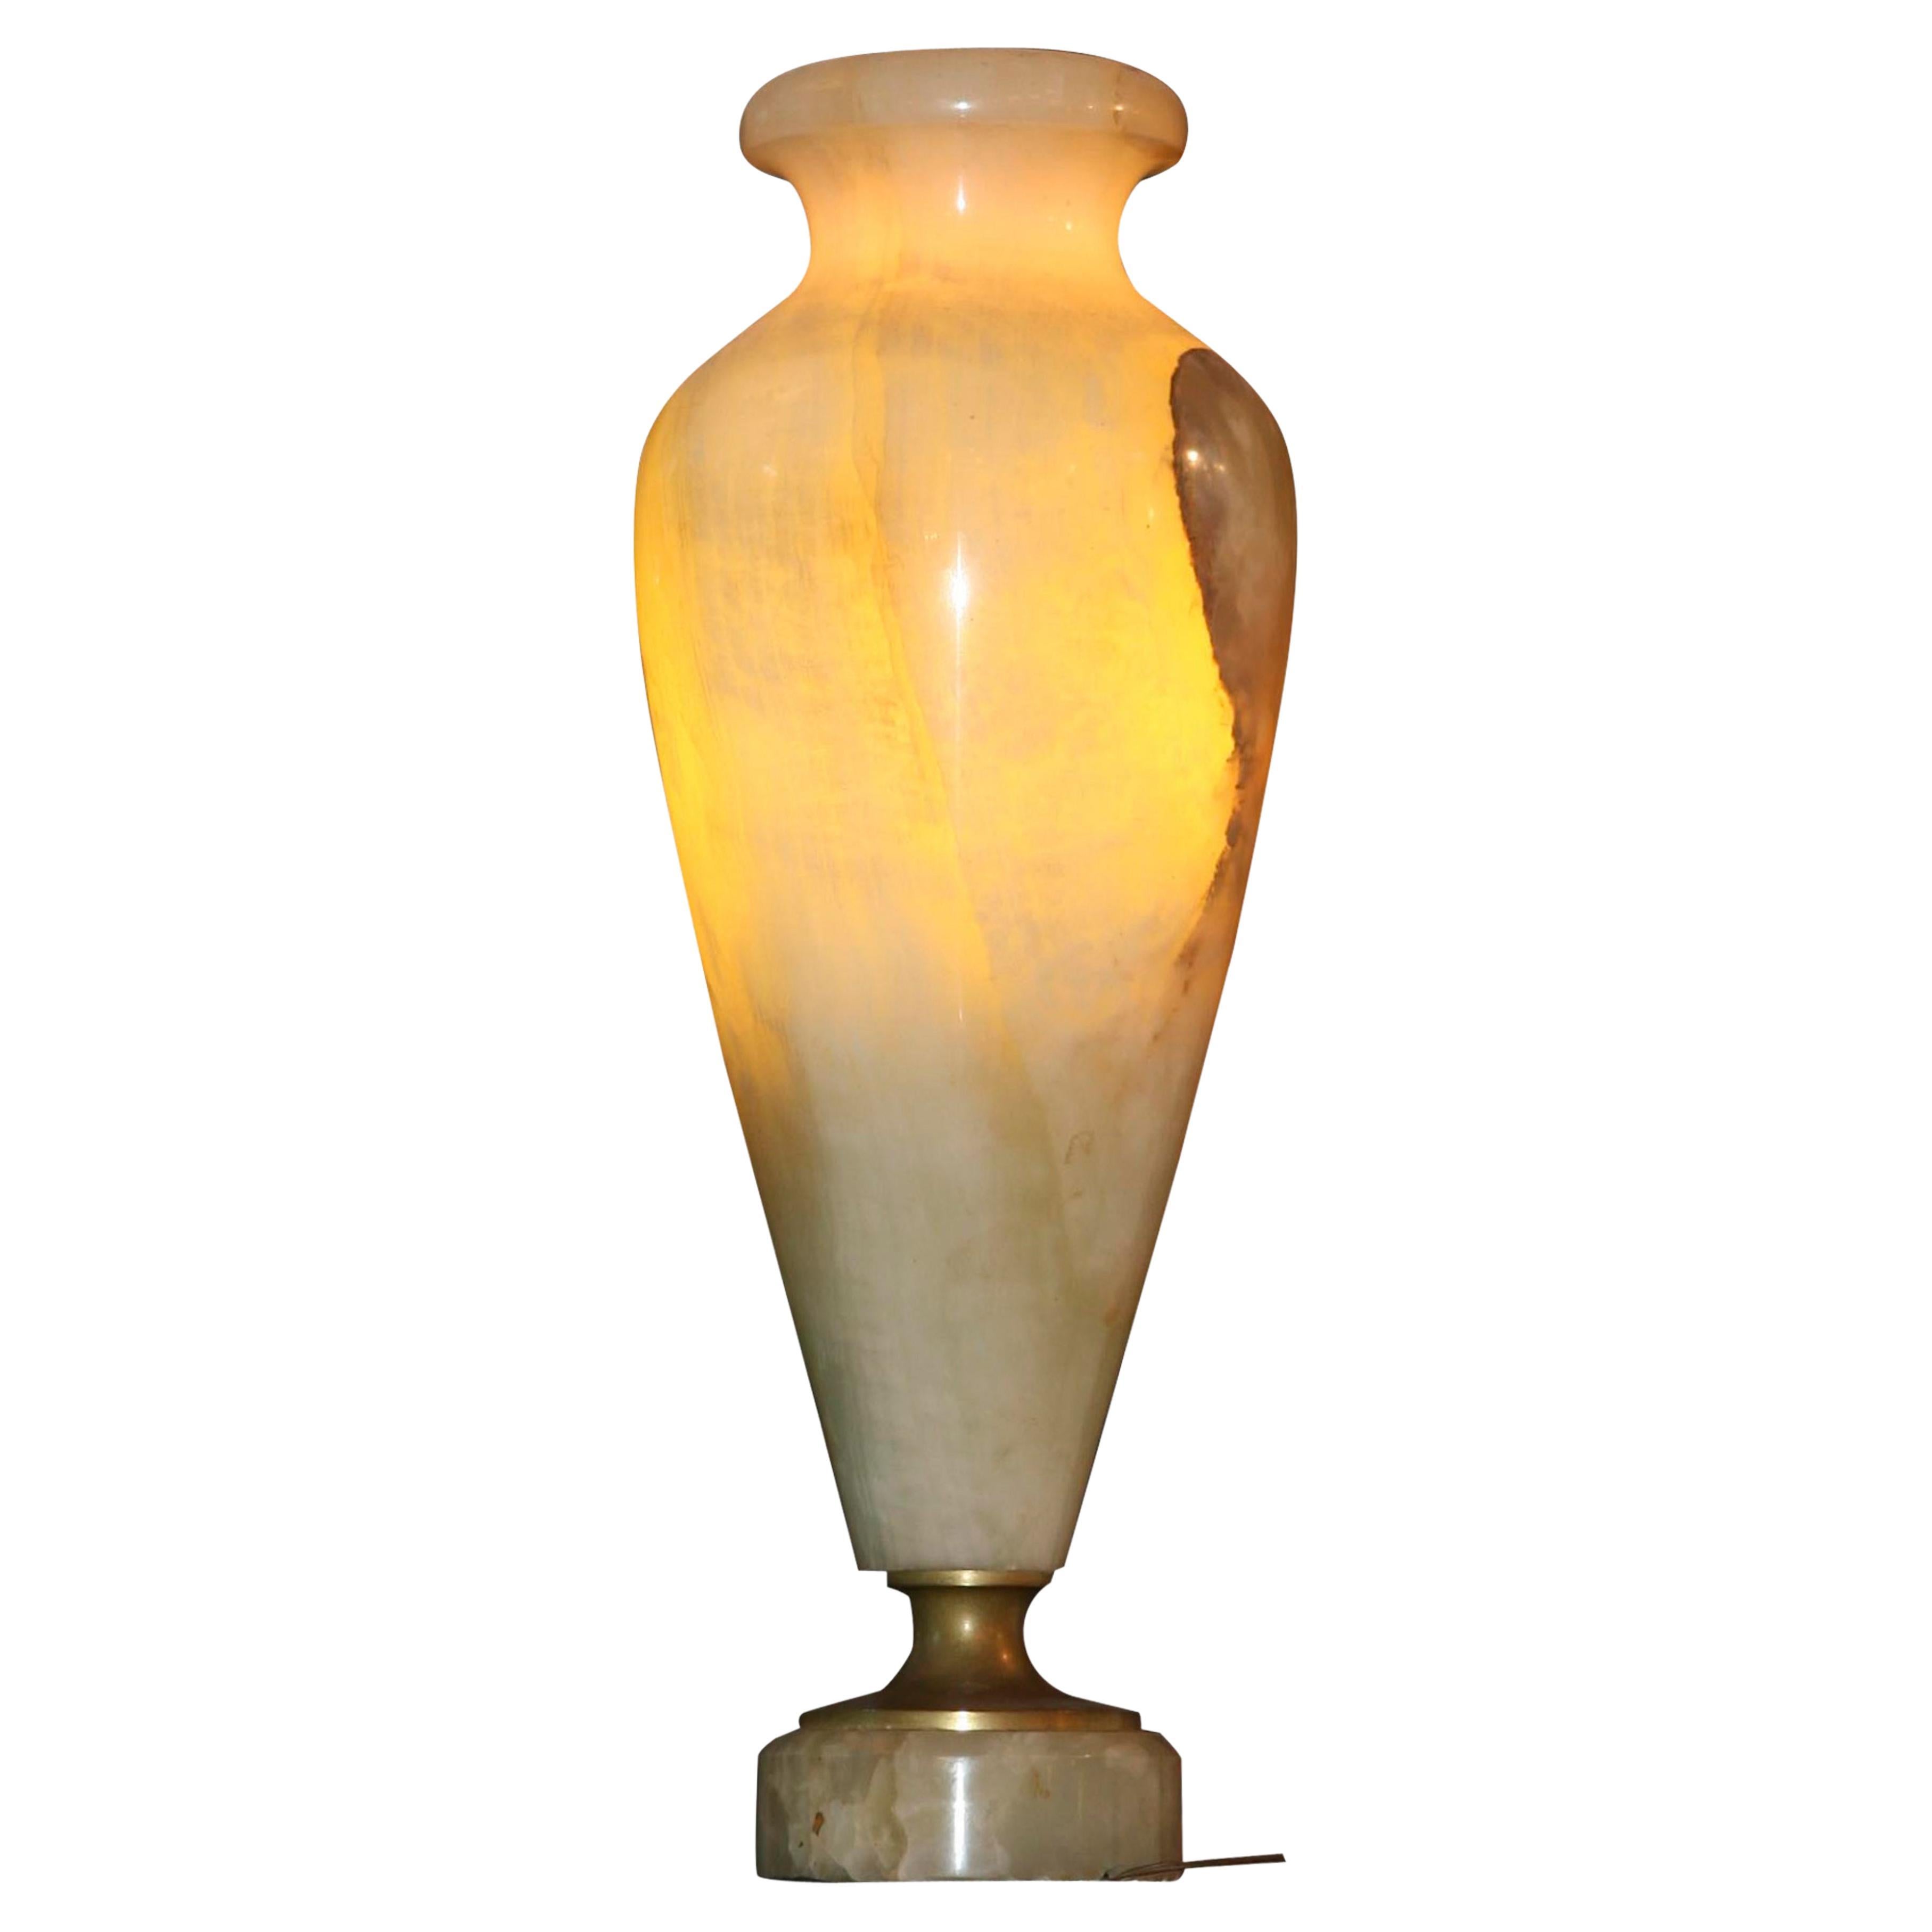 Lampe de bureau Art déco amaizing en marbre, 1920, fabriquée en France